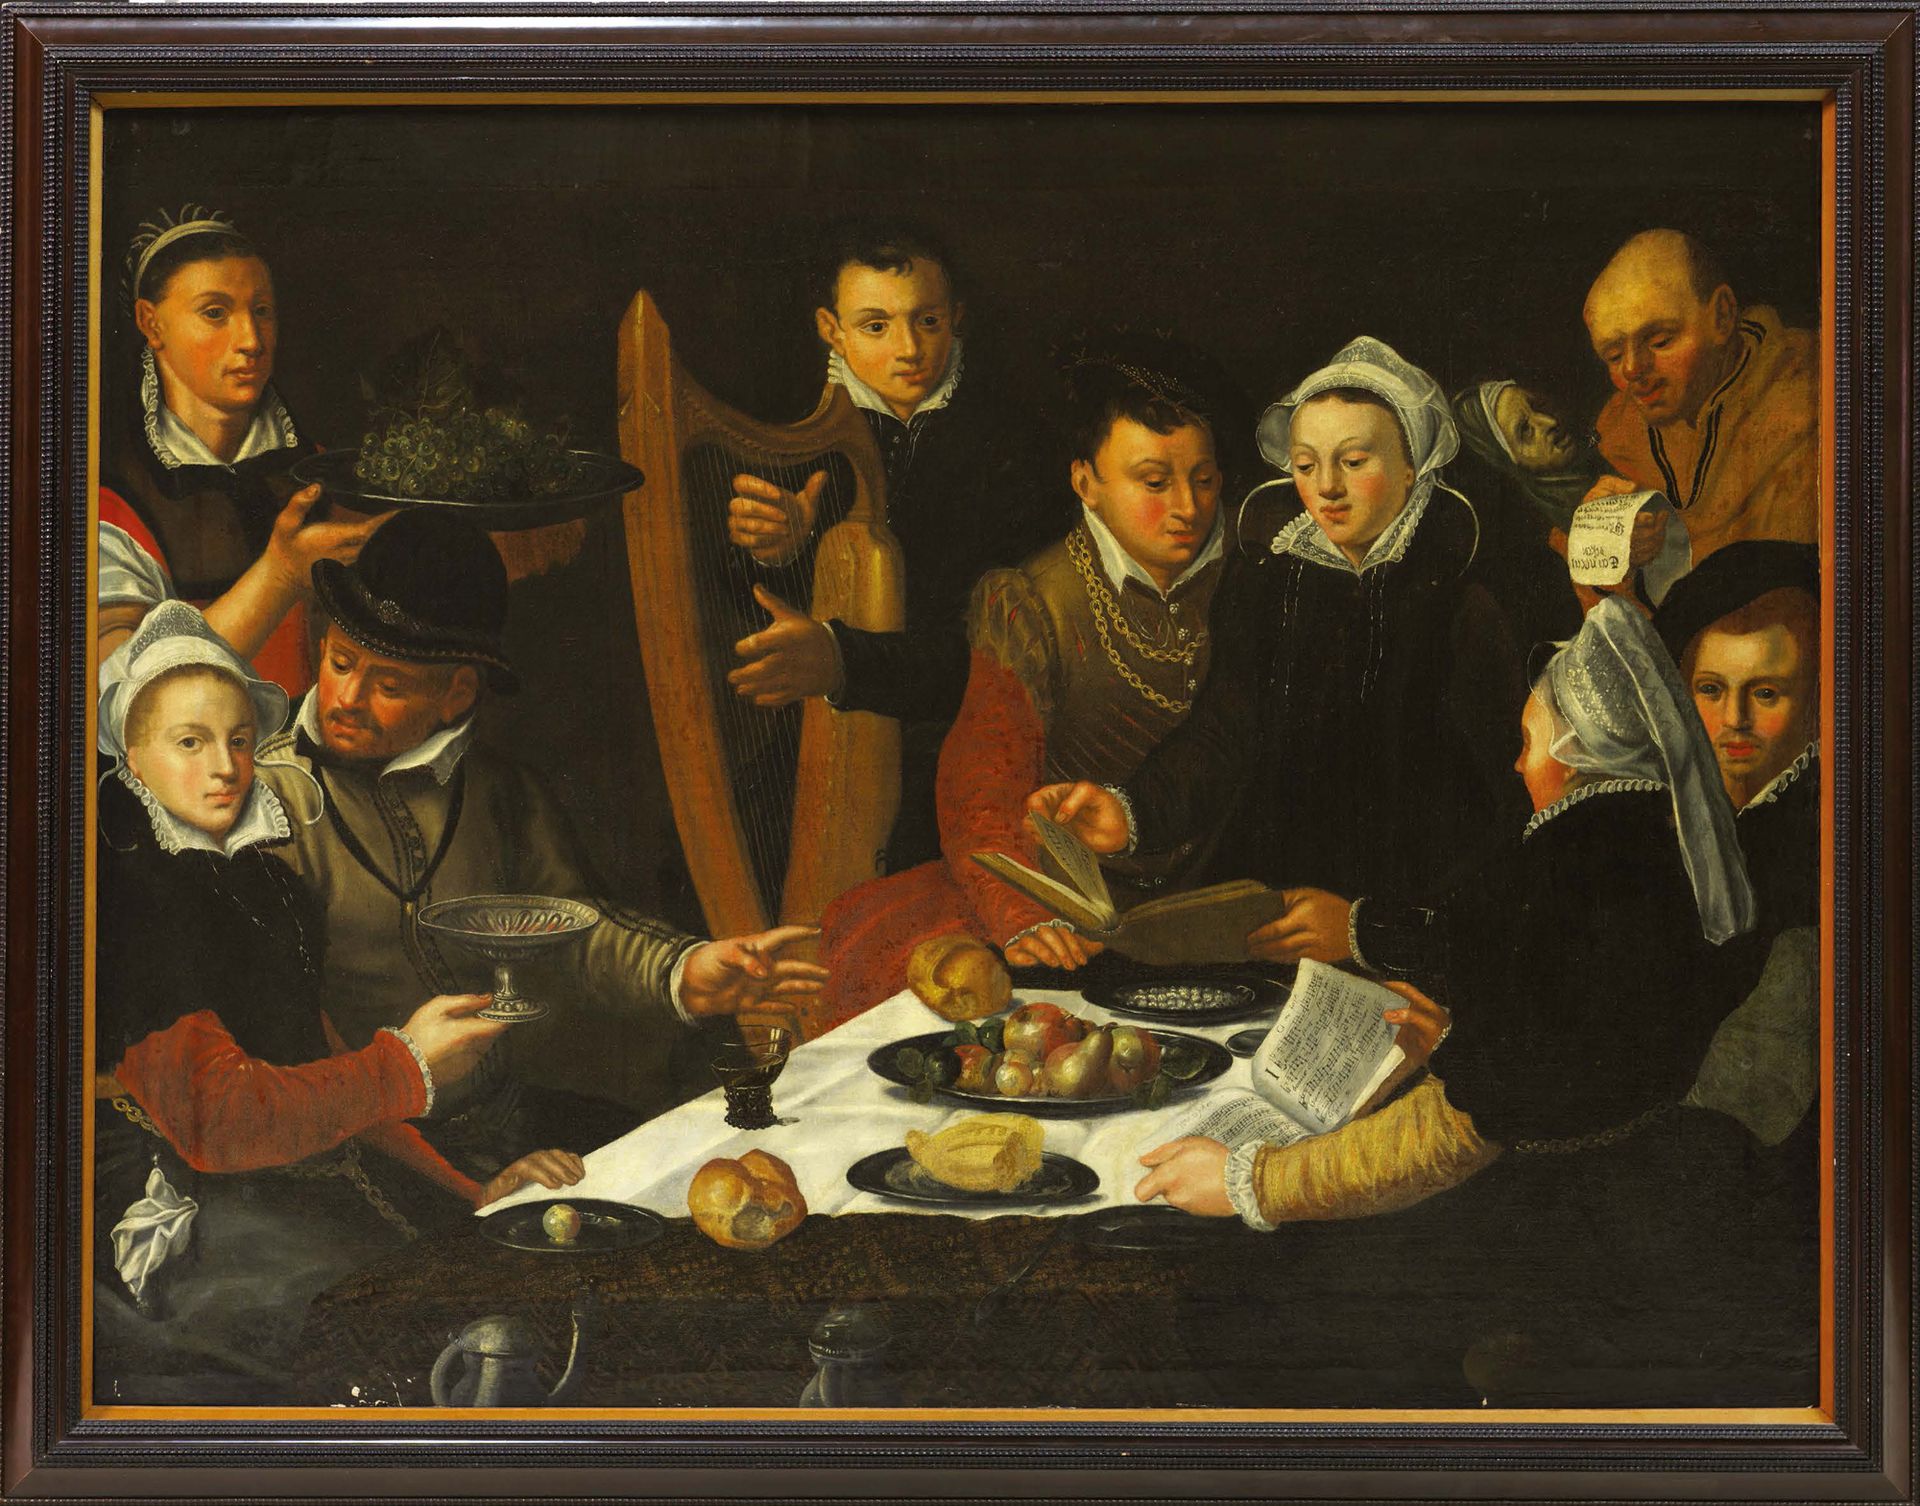 ECOLE HOLLANDAISE 1629, SUIVEUR DE DIRCK BARENTZ 加兰特与音乐家的晚餐
布面油画（顶部放大了约10厘米）。
注释&hellip;